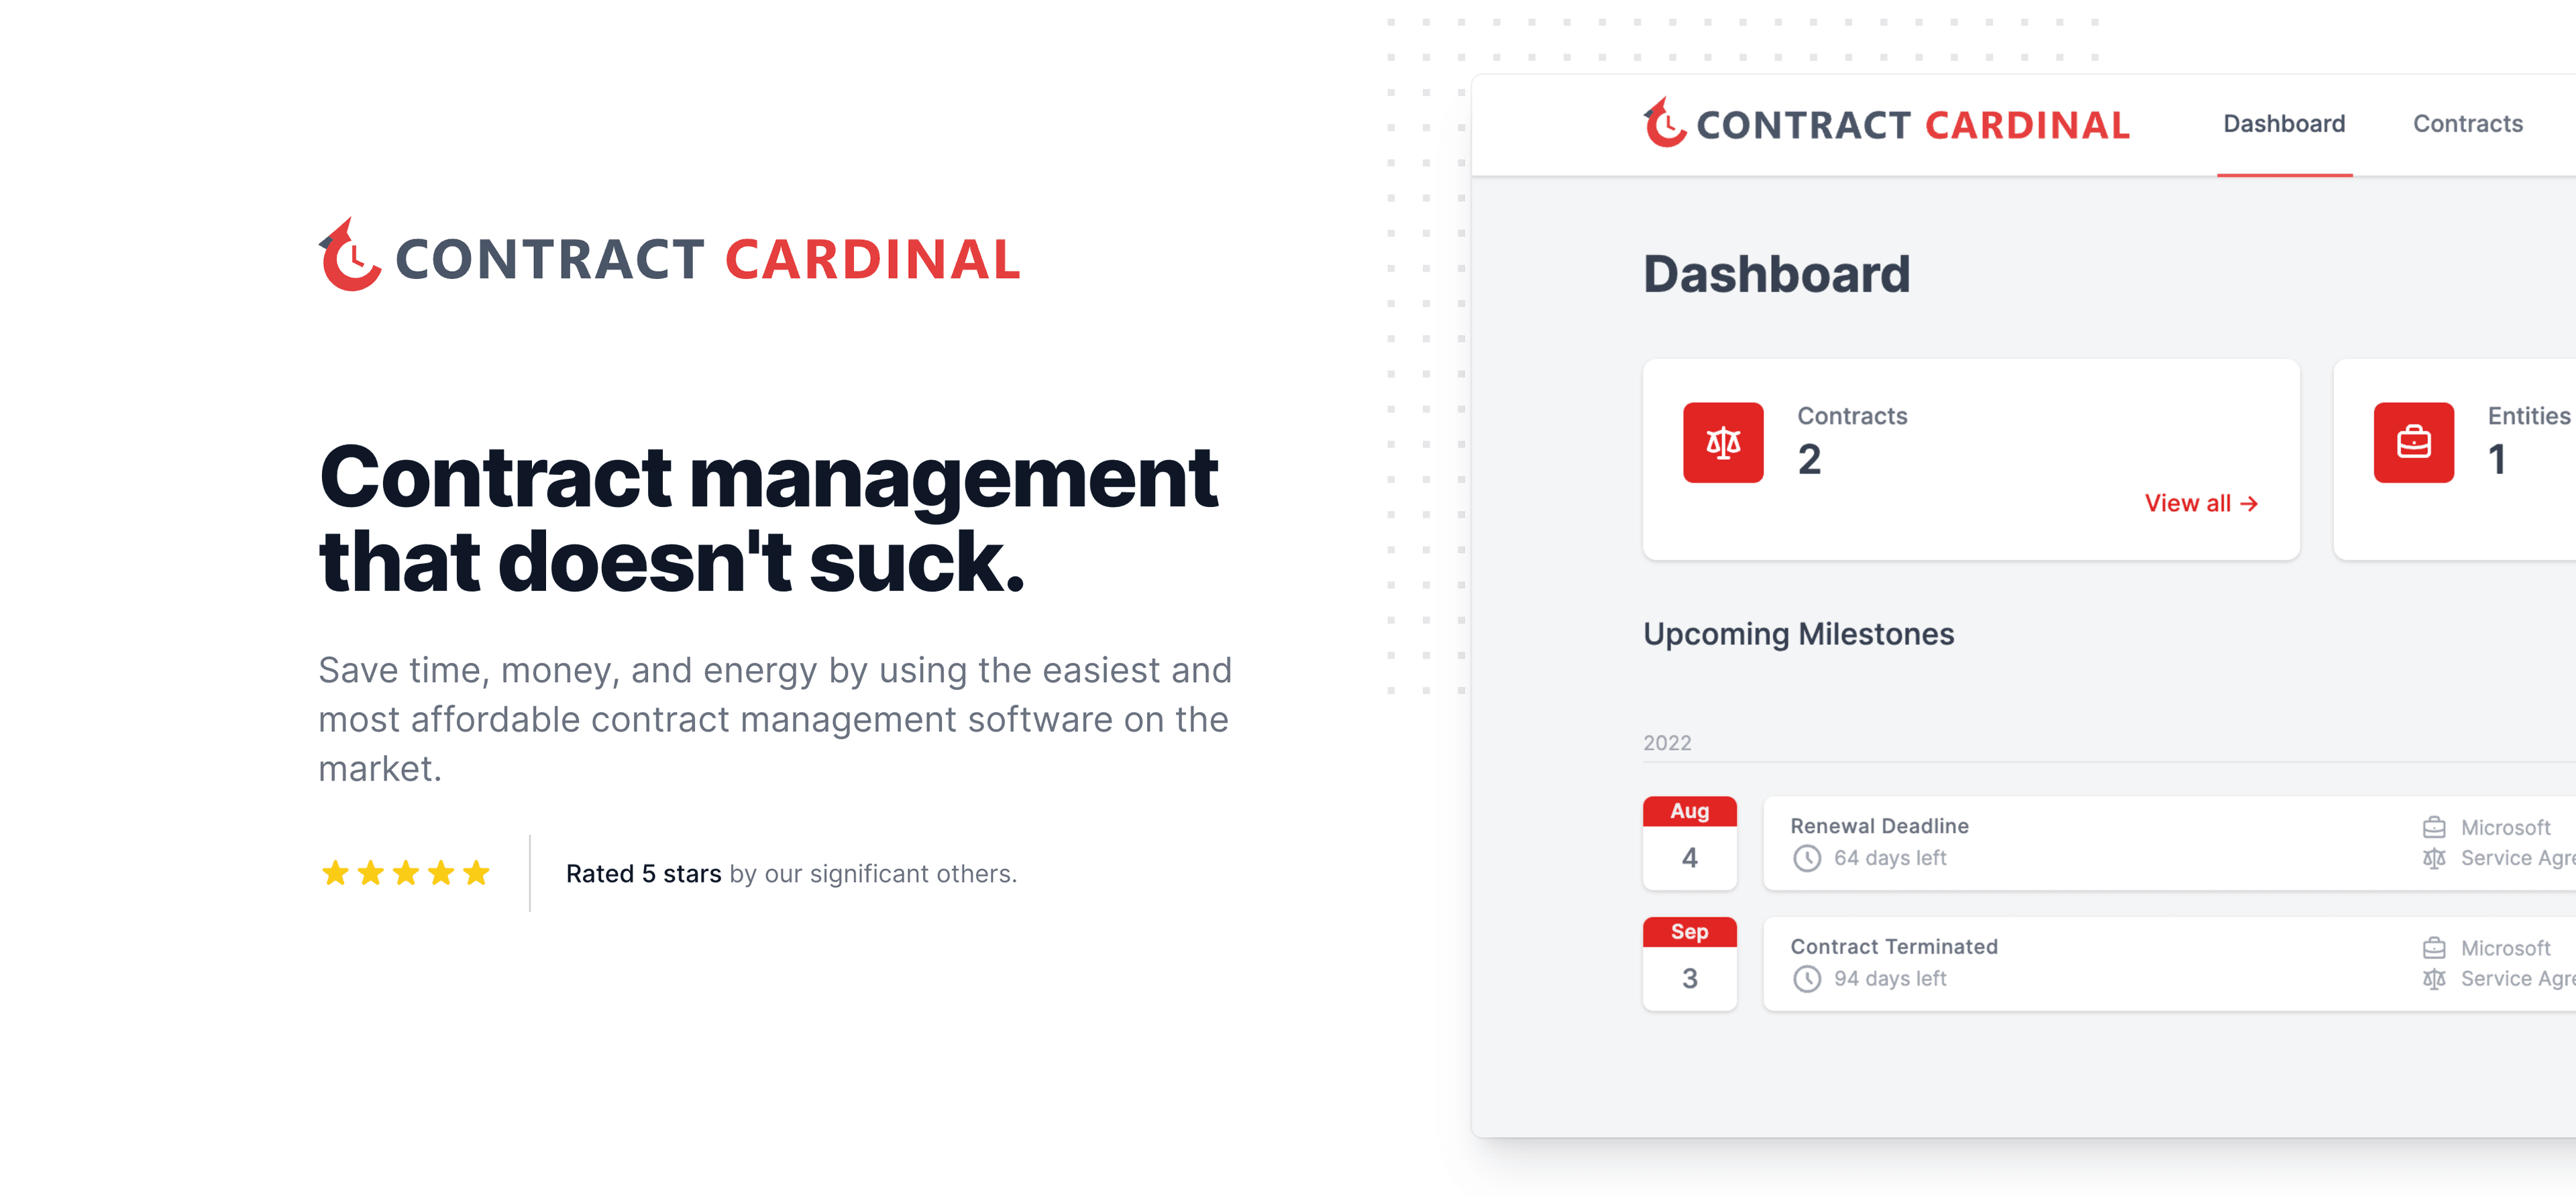 Contract Cardinal